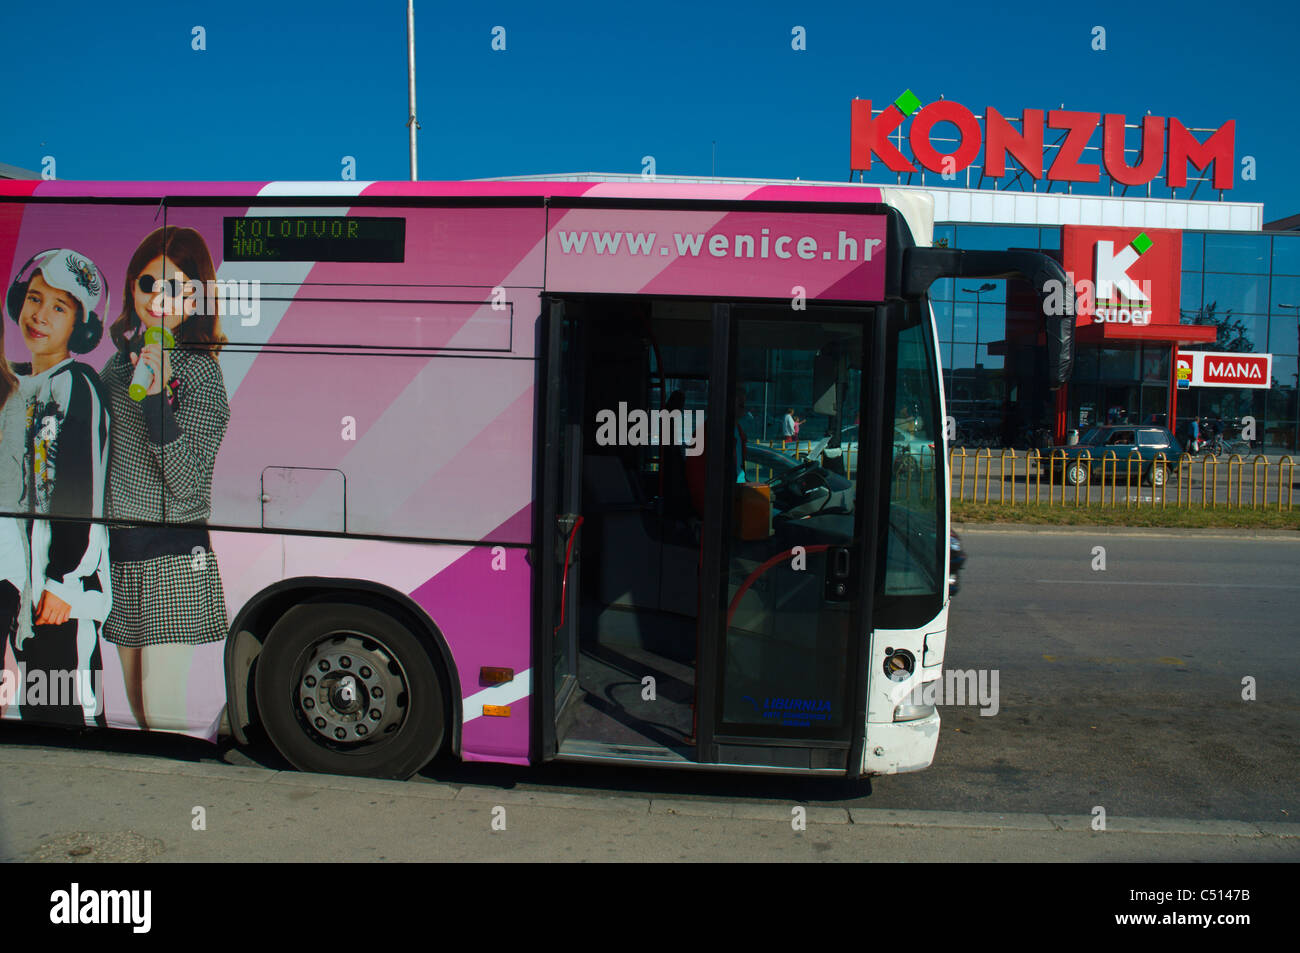 Bus stop ad immagini e fotografie stock ad alta risoluzione - Alamy